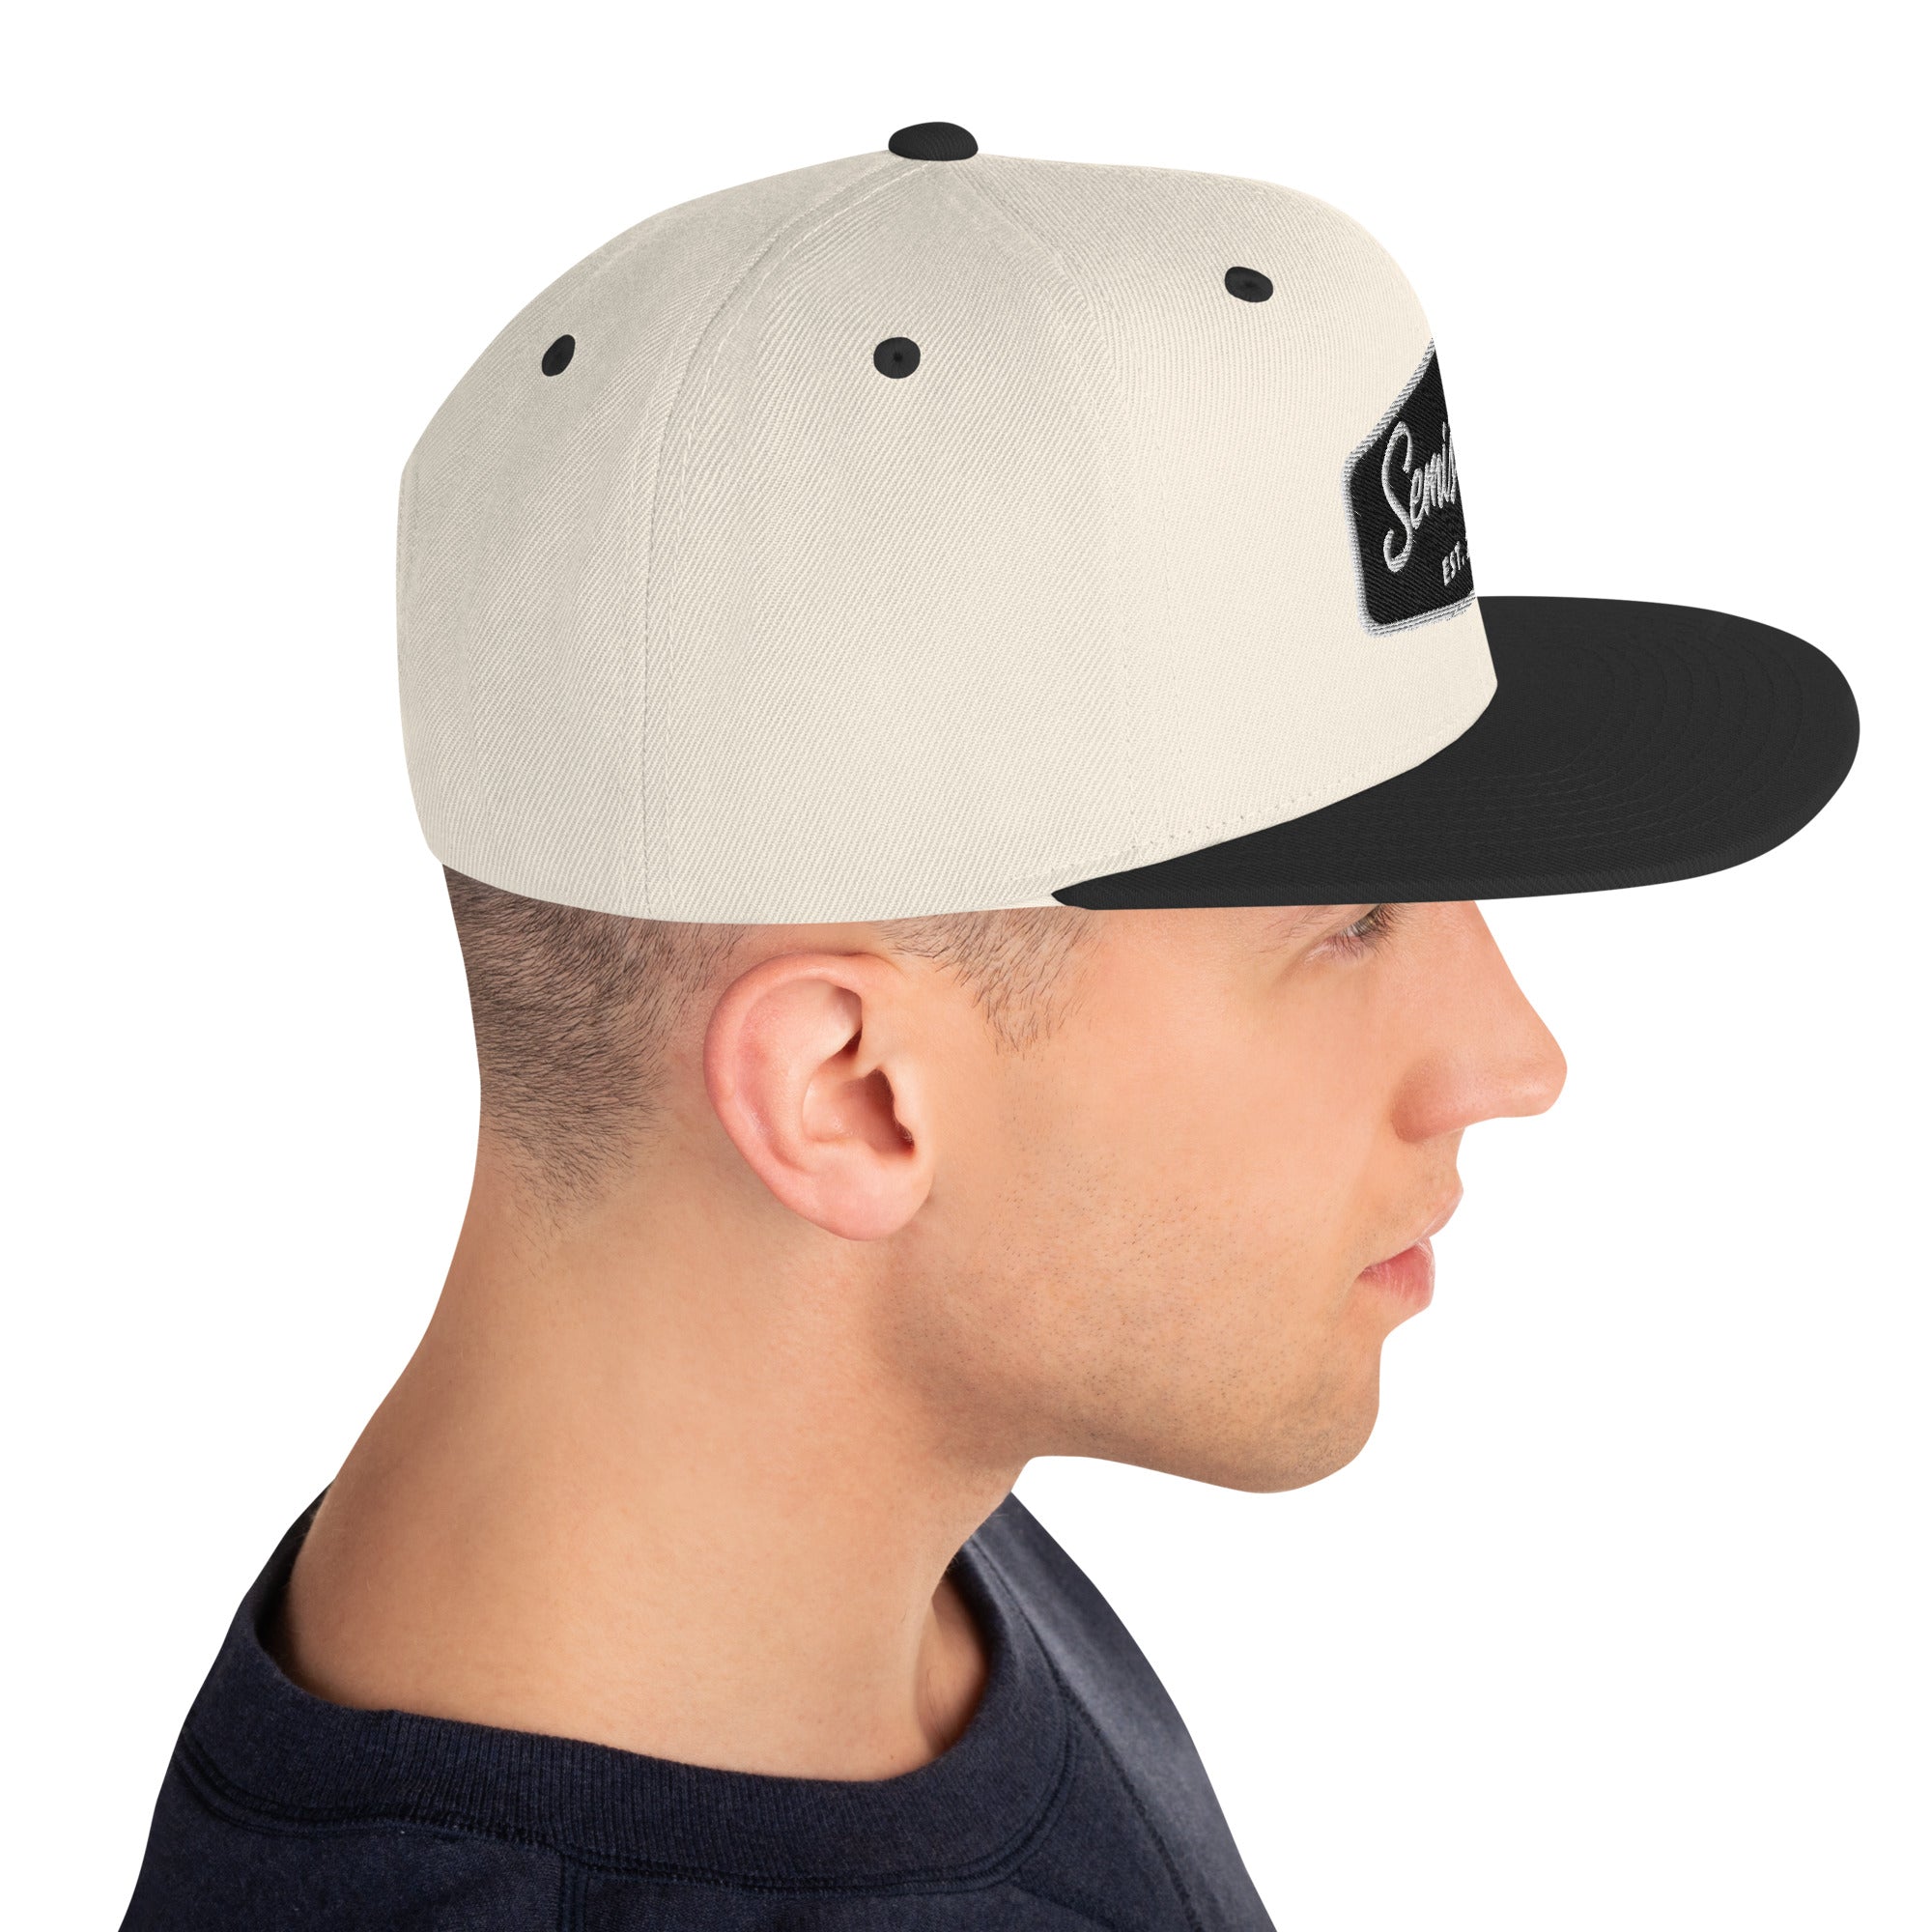 Semistupid Snapback Hat | Natural/Black